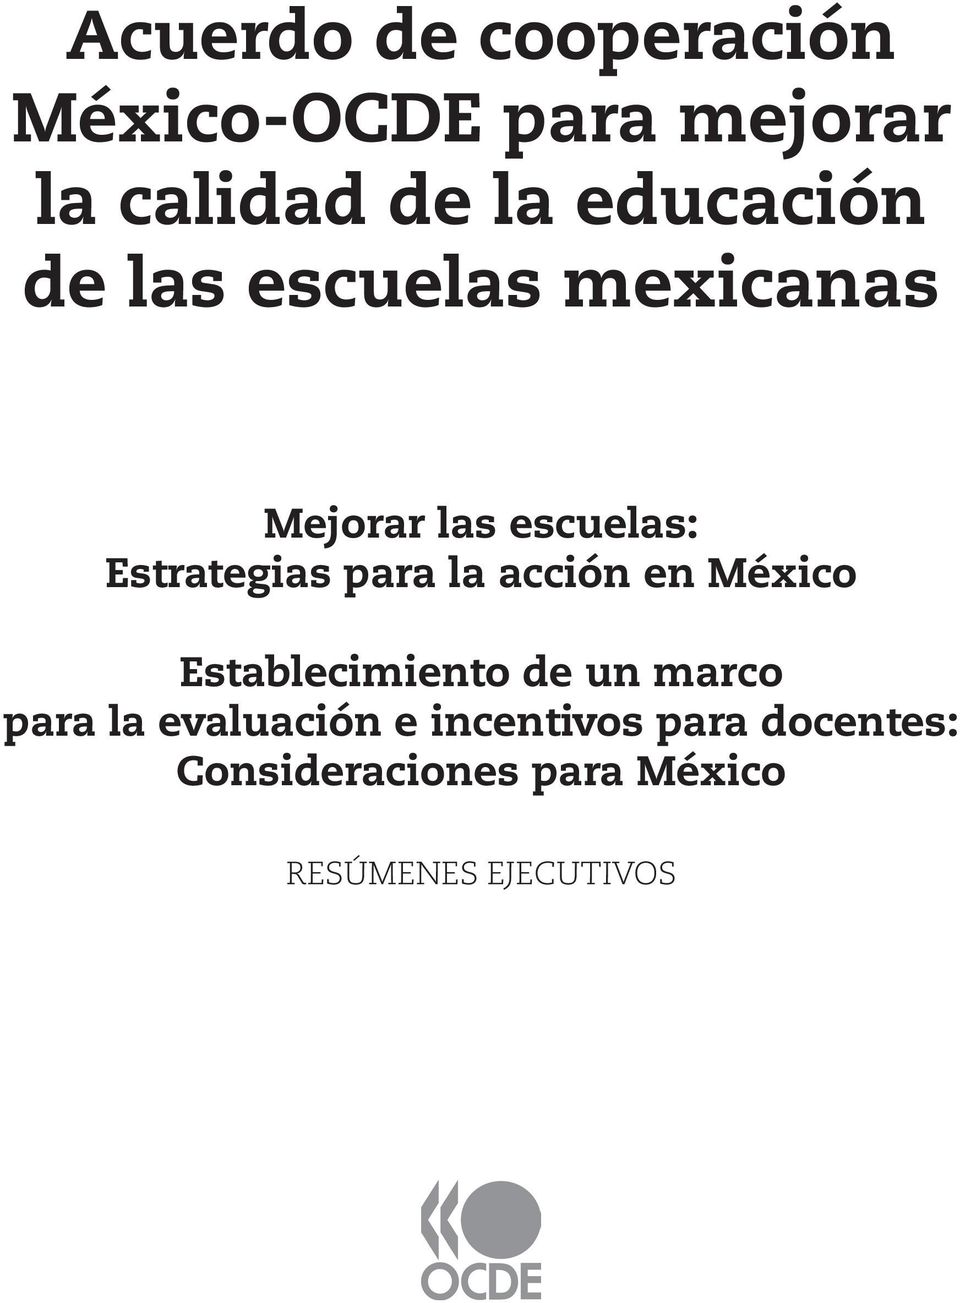 Acuerdo De Cooperacion Mexico Ocde Para Mejorar La Calidad De La Educacion De Las Escuelas Mexicanas Pdf Free Download